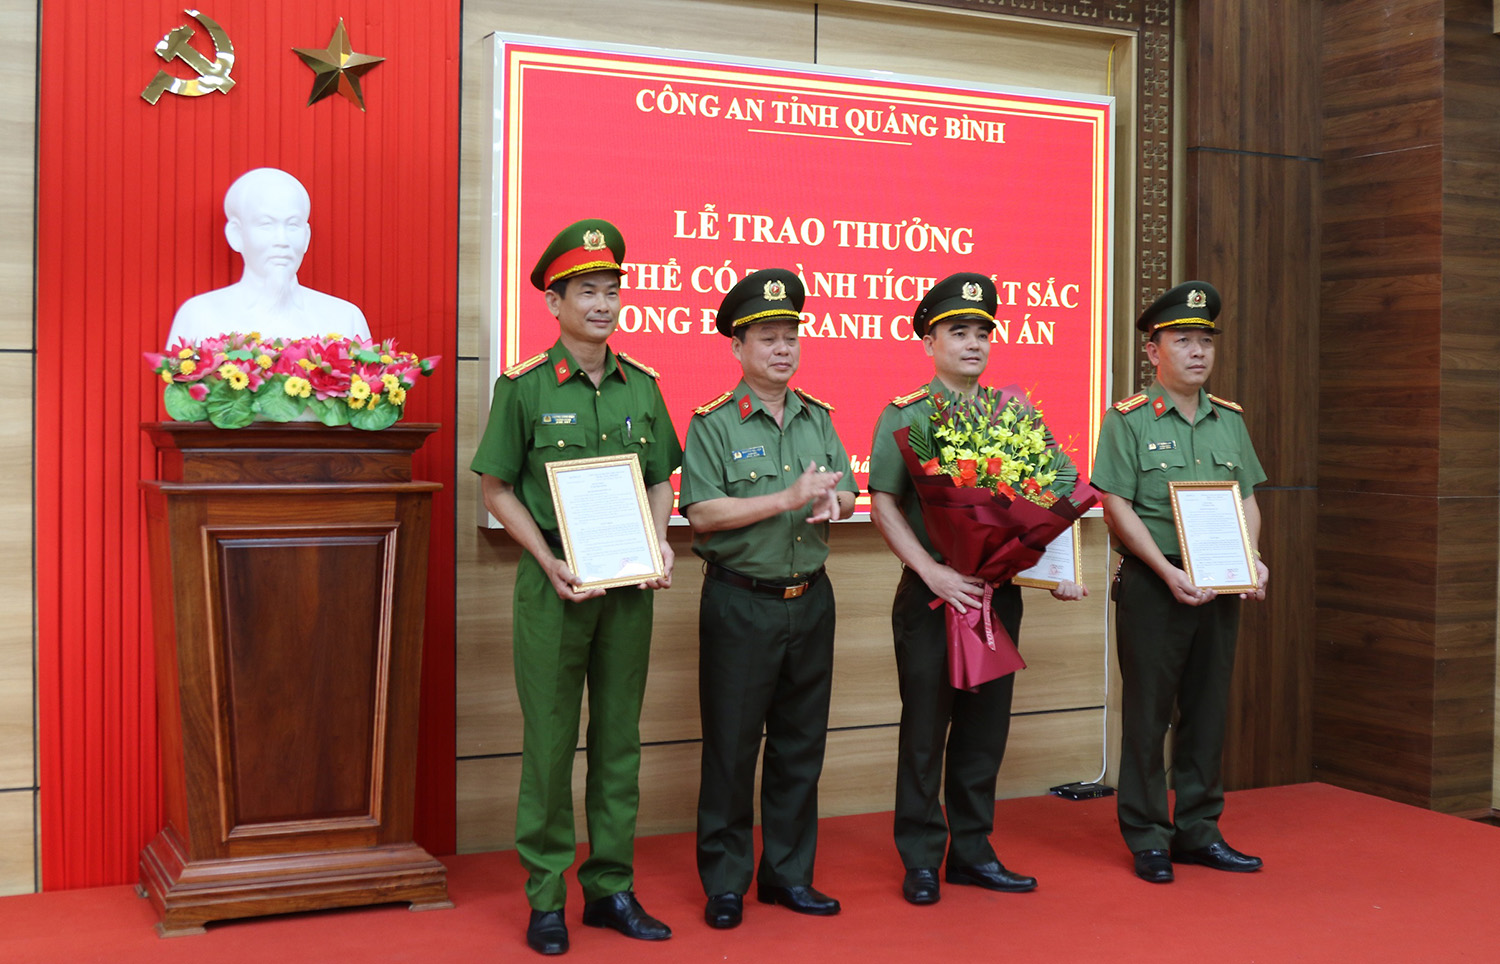 Thừa ủy quyền của lãnh đạo Bộ Công an, đồng chí Giám đốc Công an tỉnh Nguyễn Hữu Hợp trao các quyết định khen thưởng cho các đơn vị tham gia chuyên án.